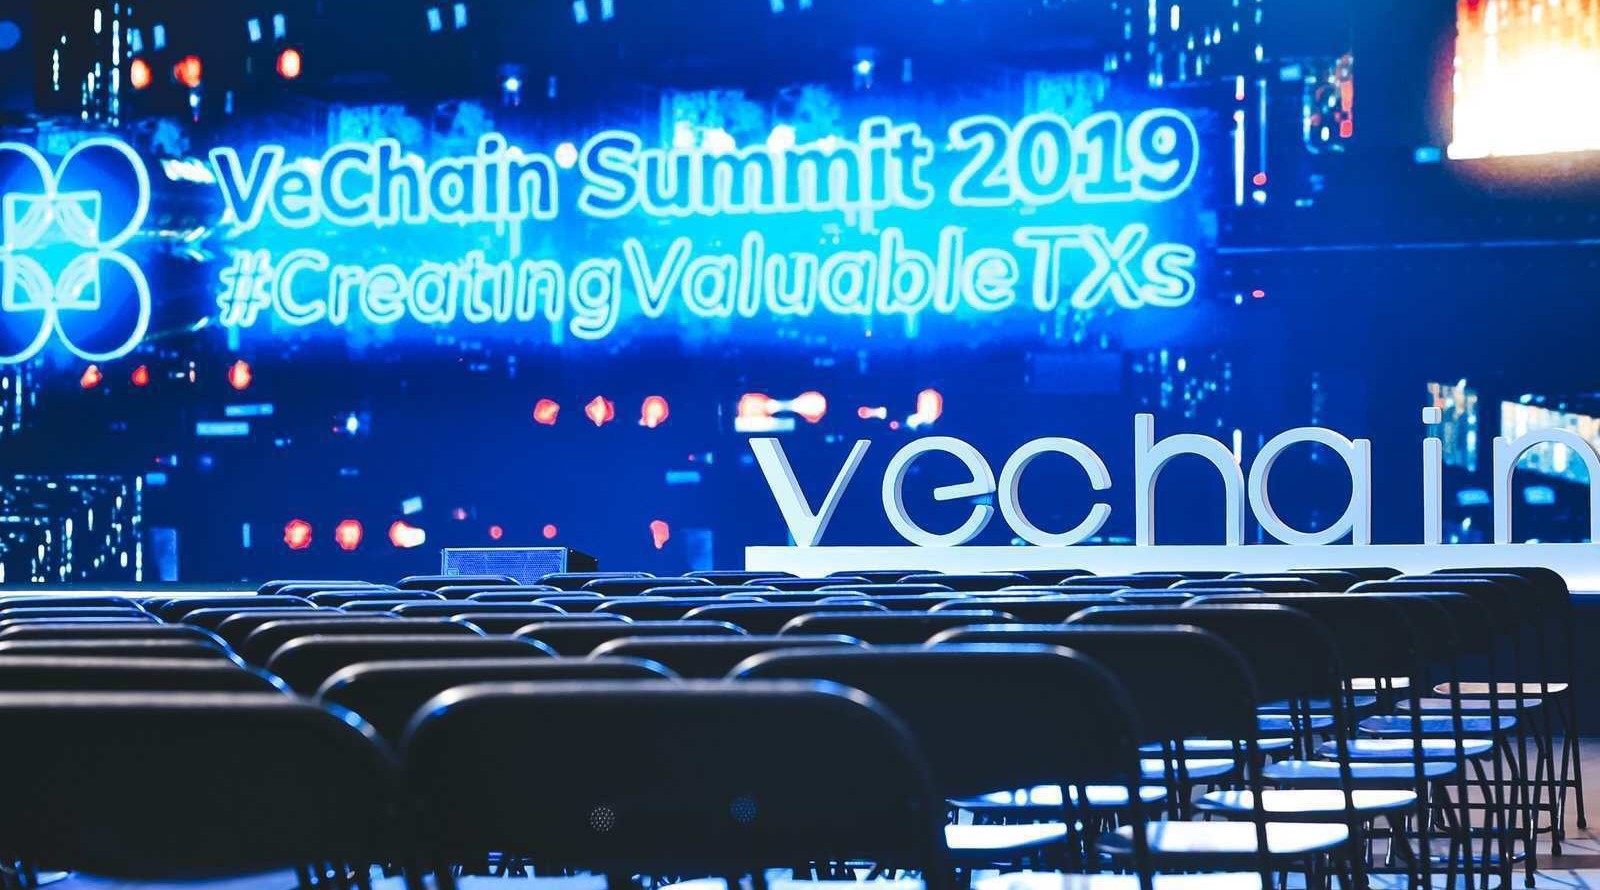 Vechain Summit 2019 